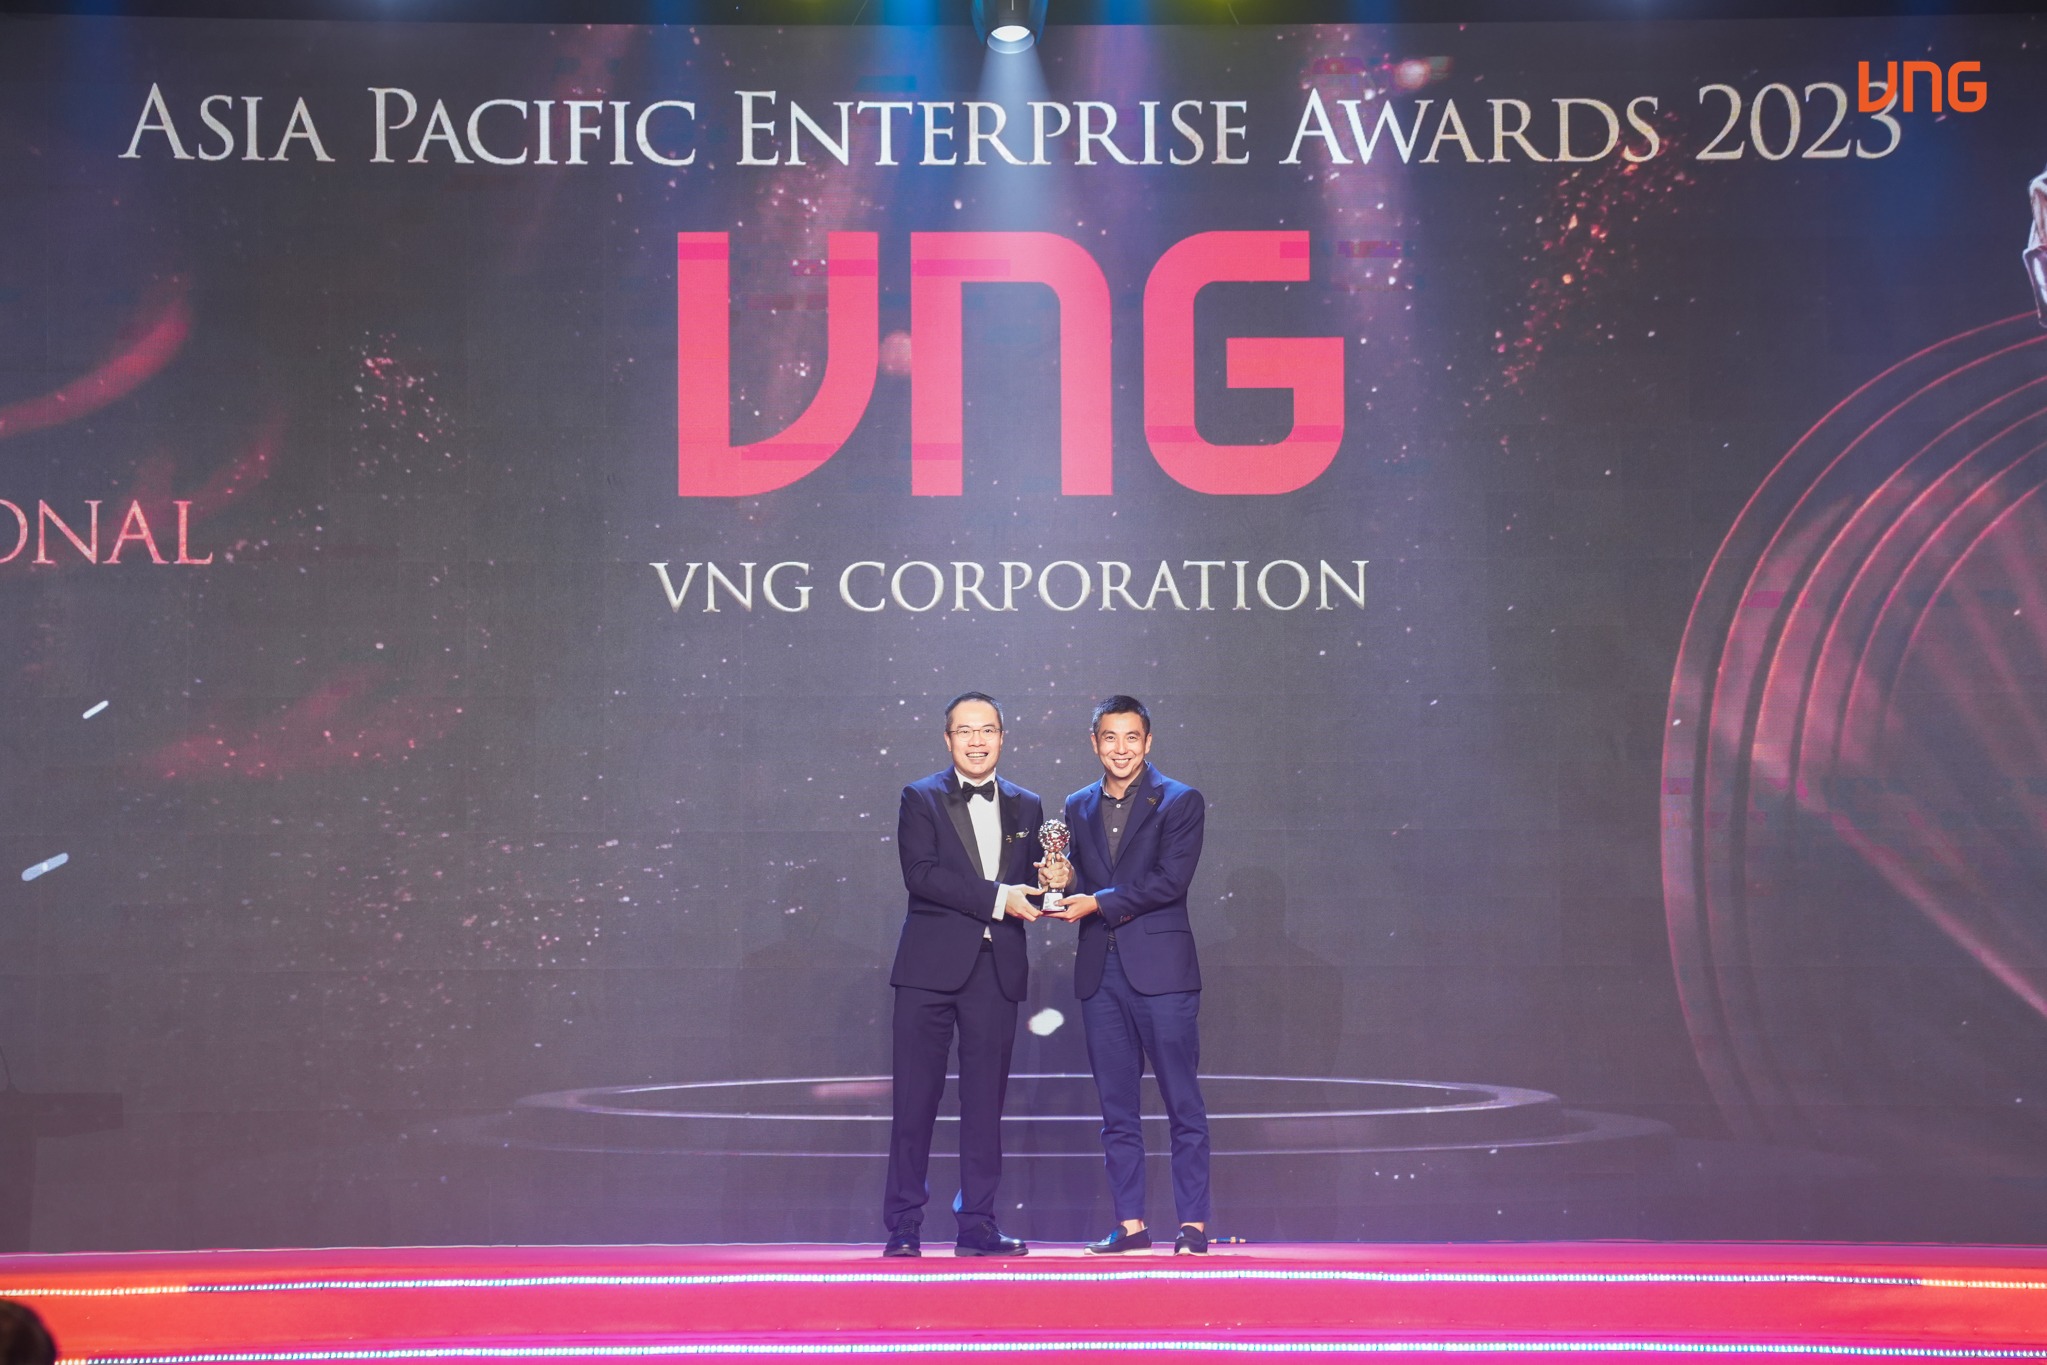 VNG được vinh danh giải thưởng “Thương hiệu truyền cảm hứng” nhờ những chiến dịch CSR vì cộng đồng sáng tạo, giàu ý nghĩa